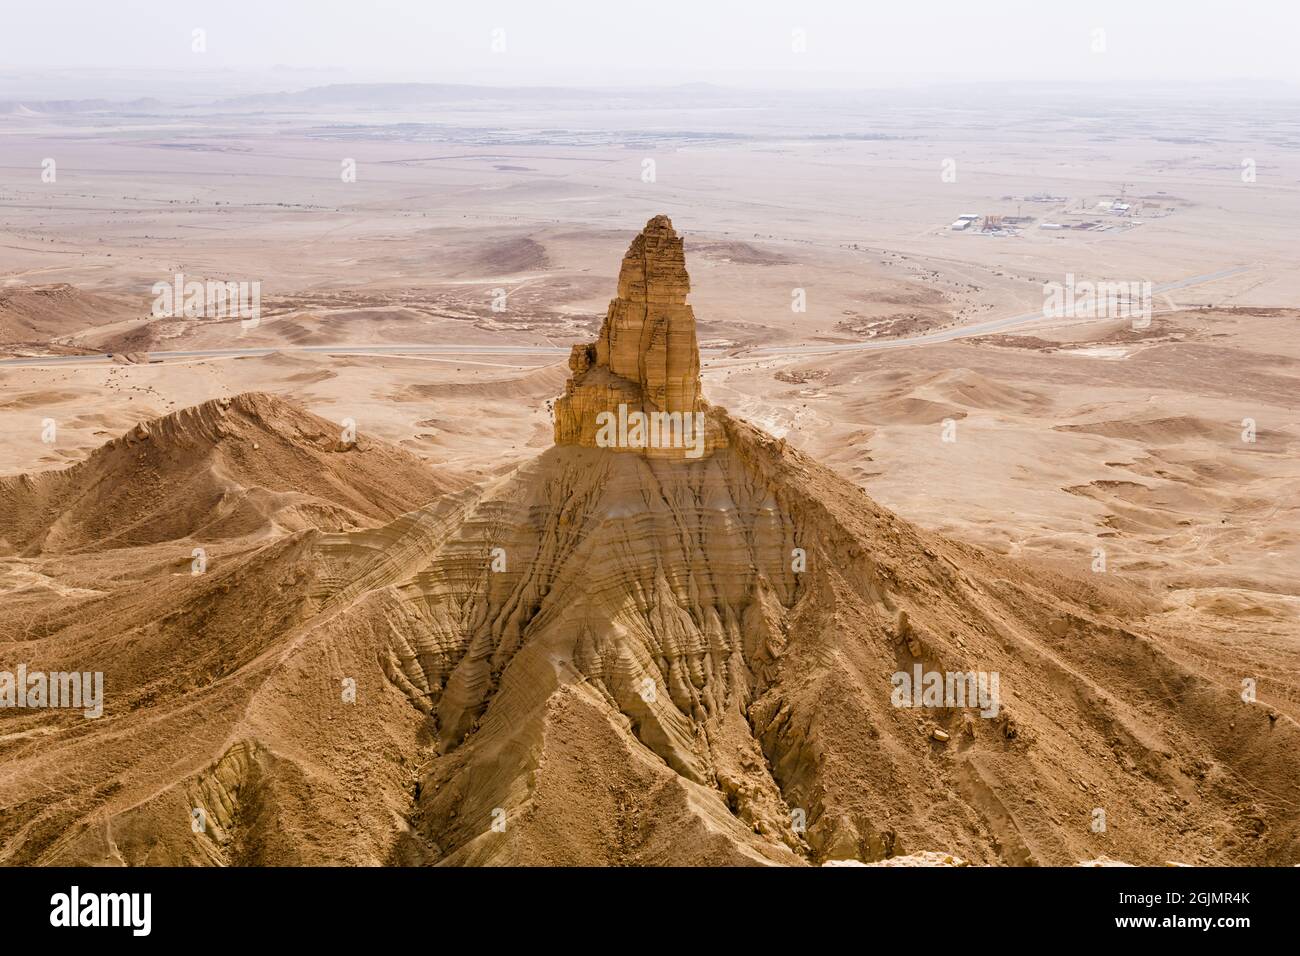 The Faisal's Finger rock near Riyadh, Saudi Arabia, a view from Jabal Tuwaiq escarpment. Stock Photo